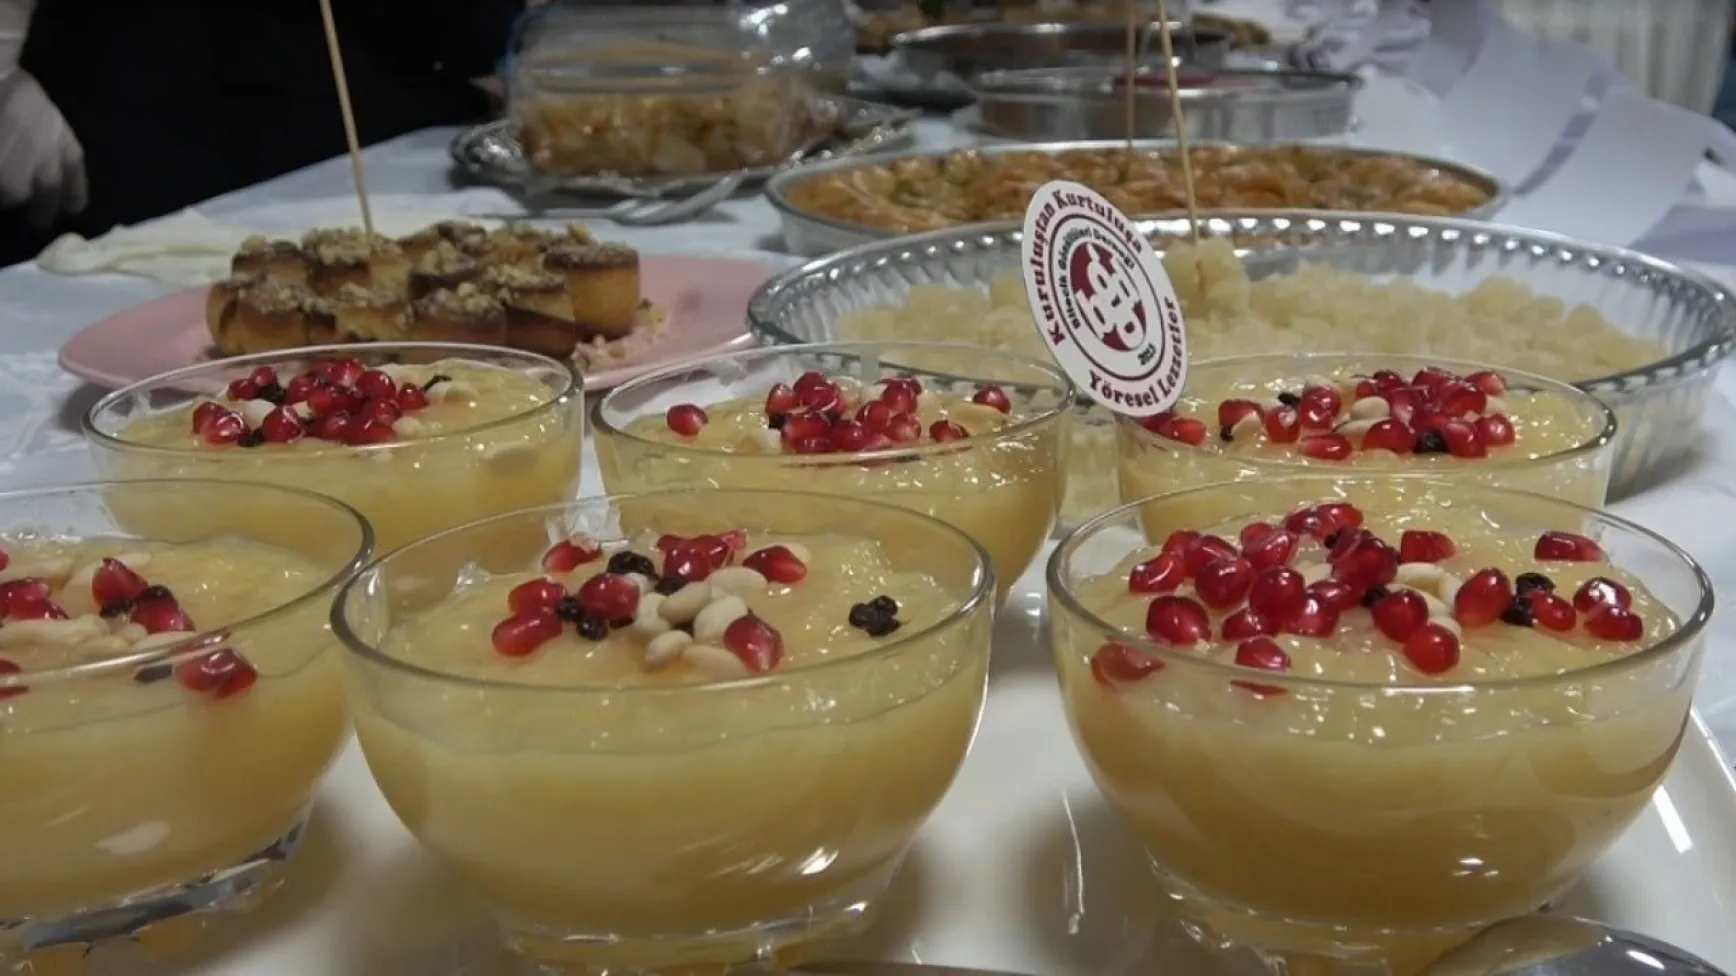 Osmanlı döneminde şehzade sünnetlerinde ikram edilen 'zerde' tatlısı yarışmada birinci oldu